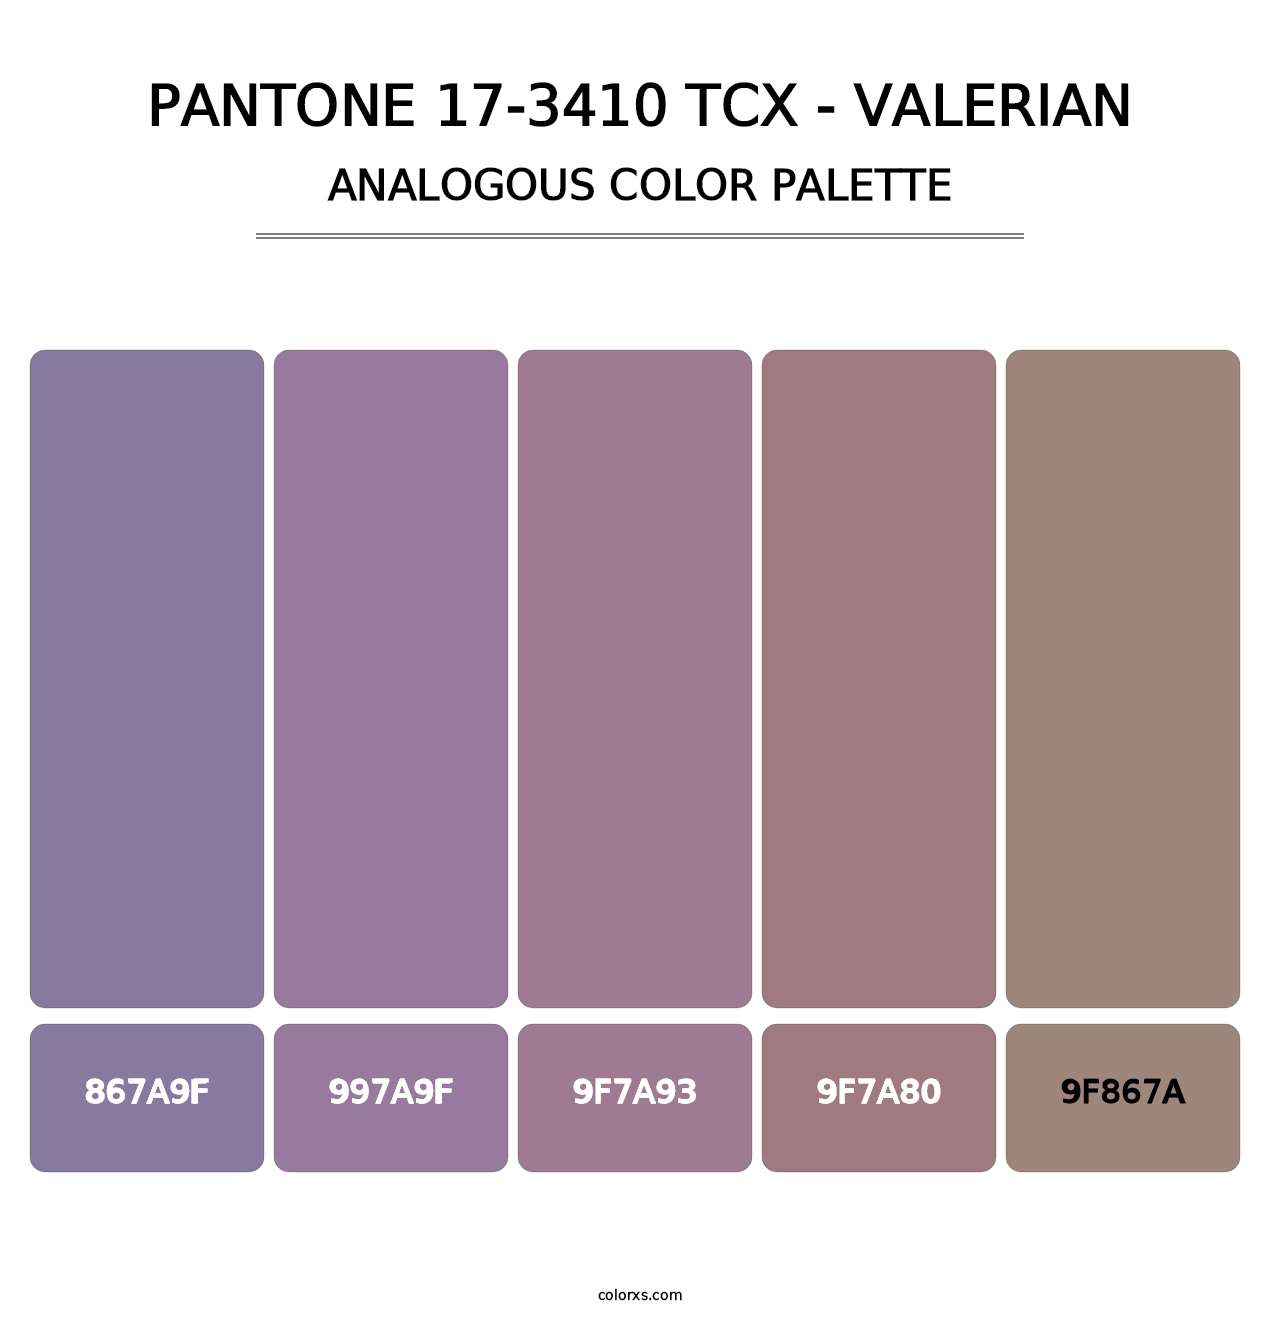 PANTONE 17-3410 TCX - Valerian - Analogous Color Palette